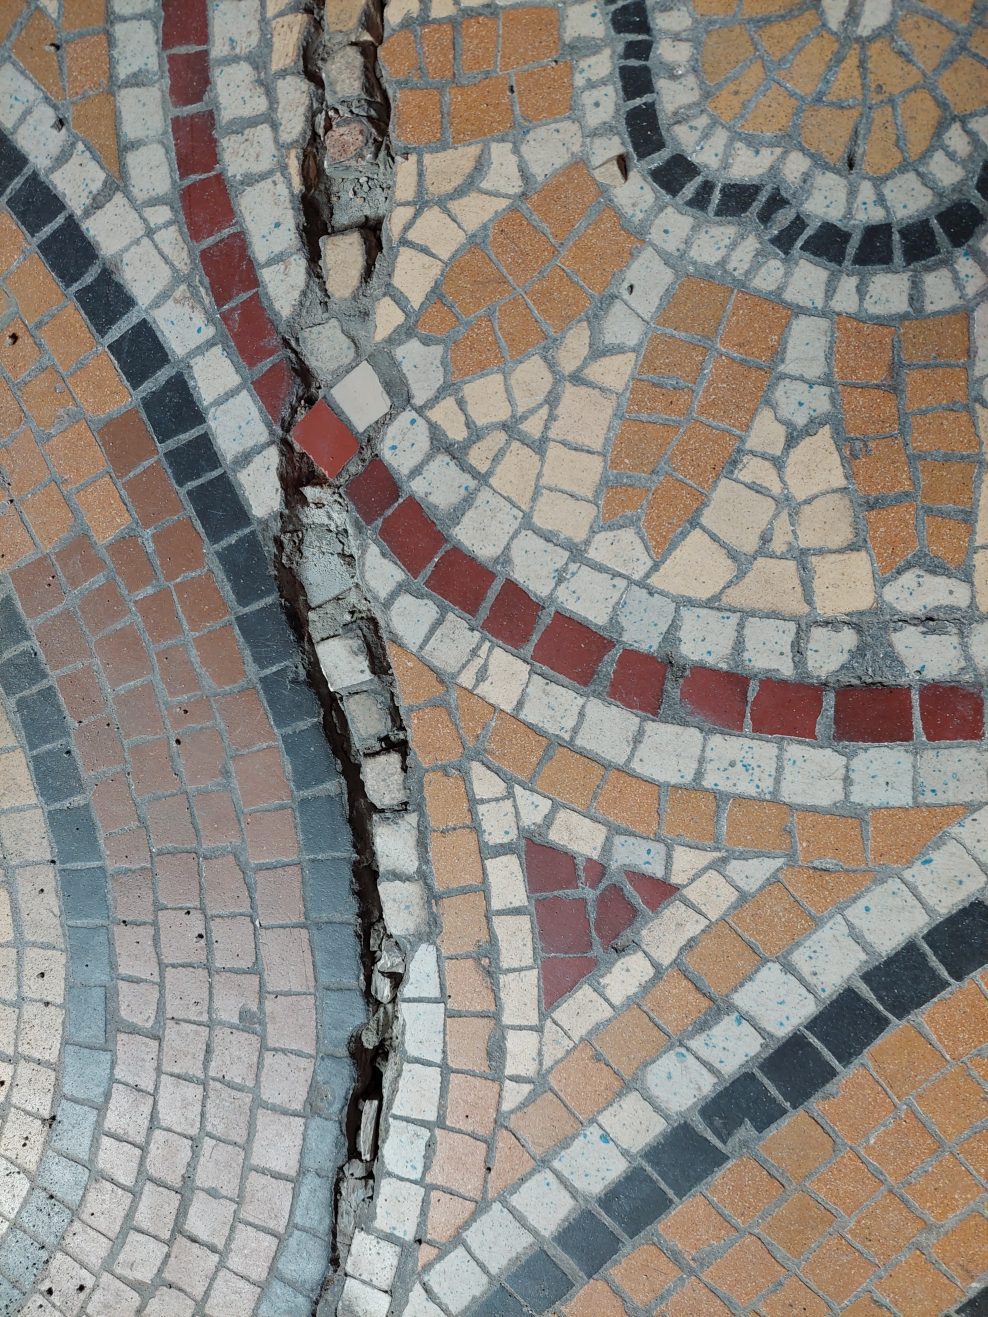 Rainford Hall mosaic floor.